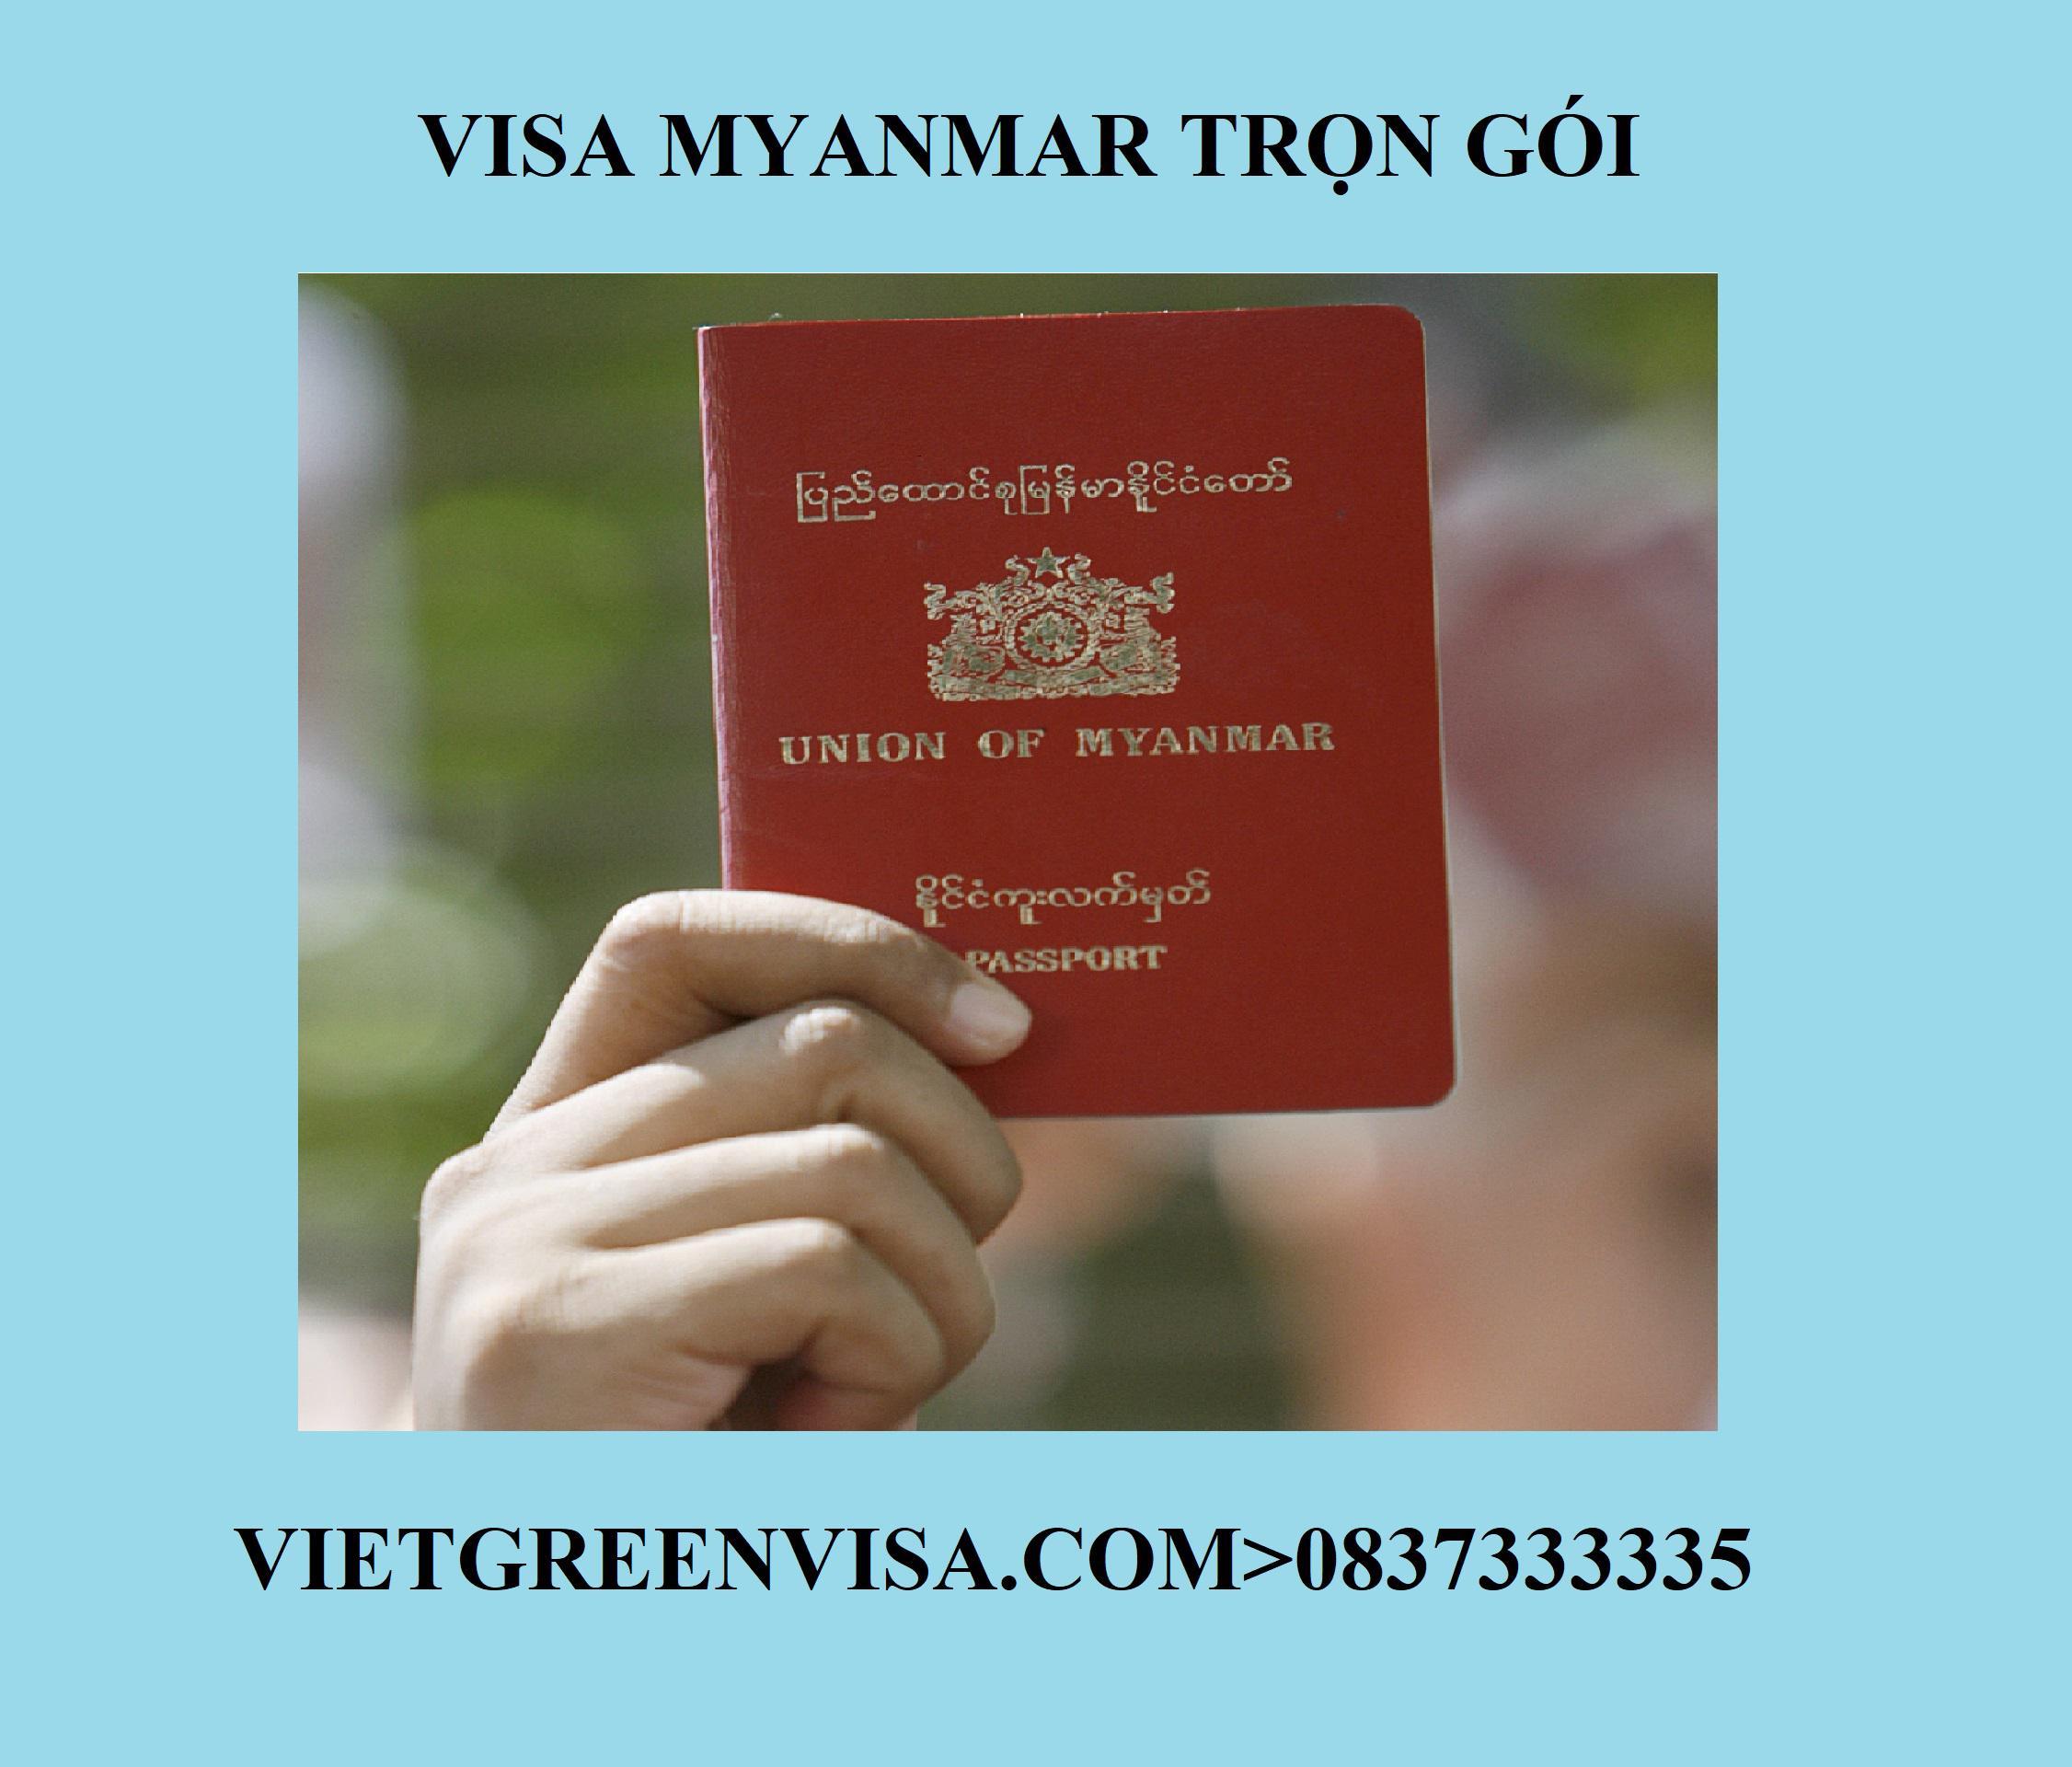 Dịch vụ xin visa Myanmar trọn gói tại Hà Nội, Hồ Chí Minh